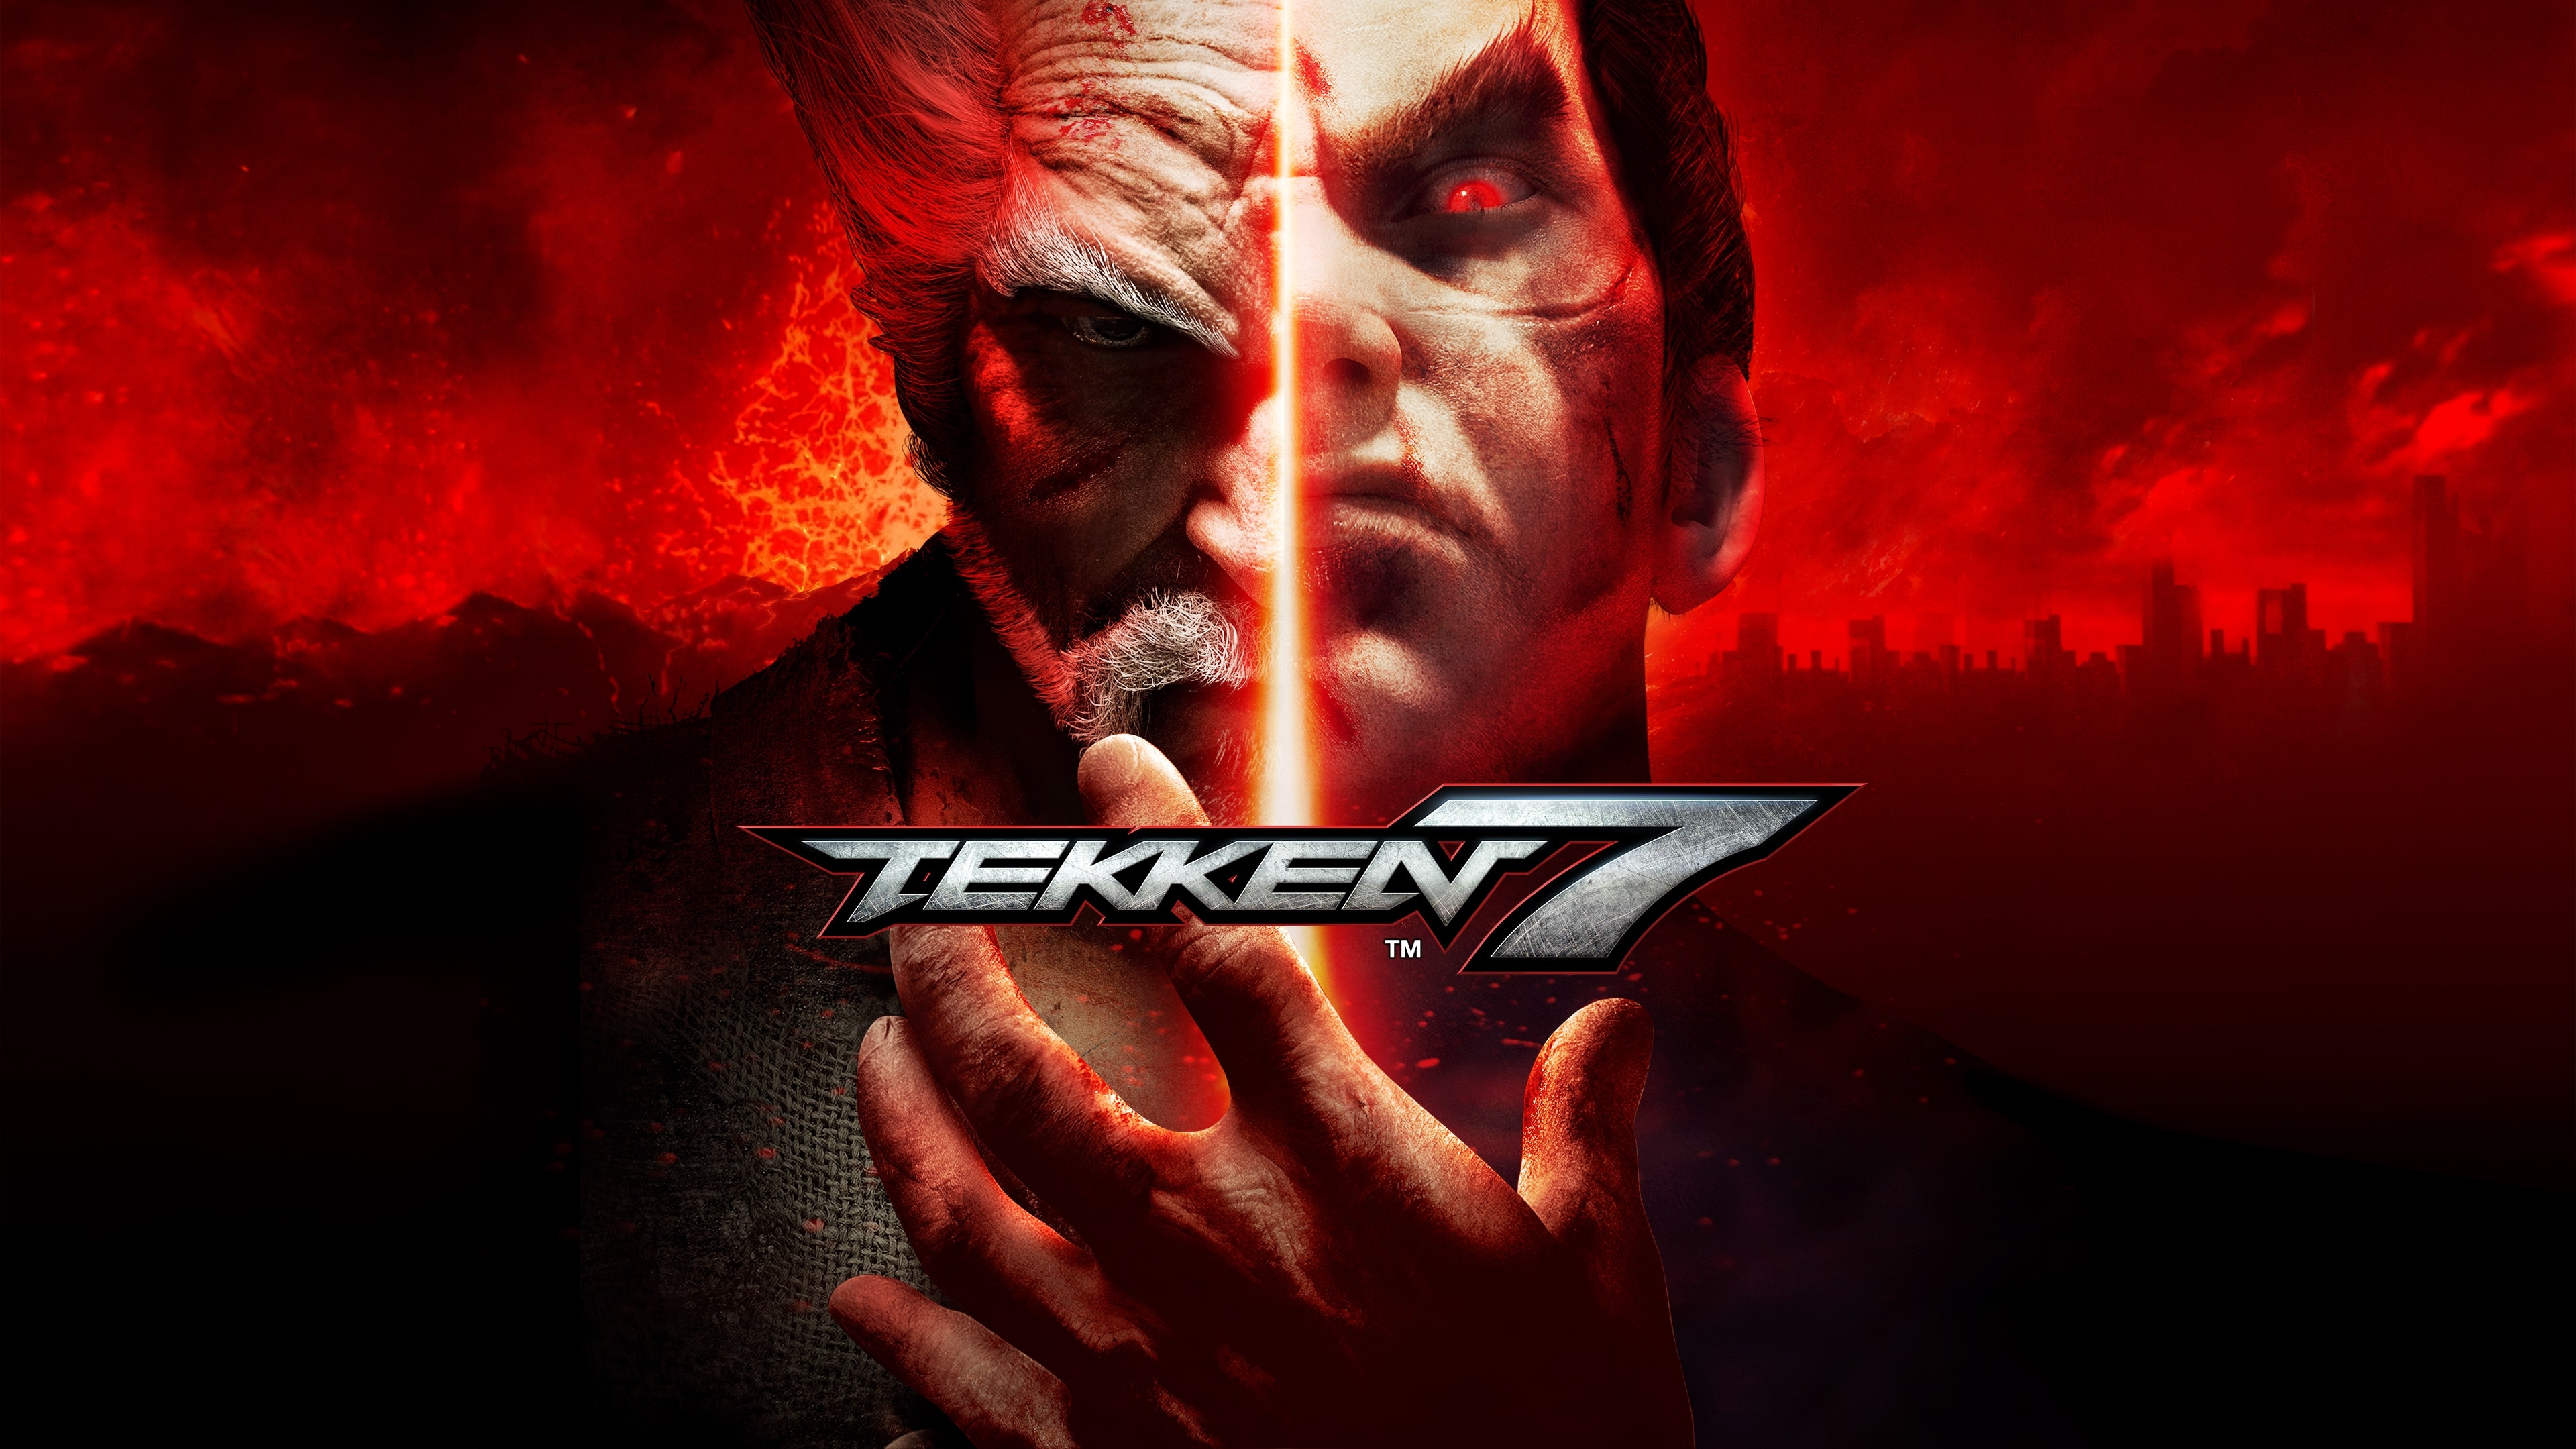 naturlig I første omgang pels Buy Tekken 7 Steam